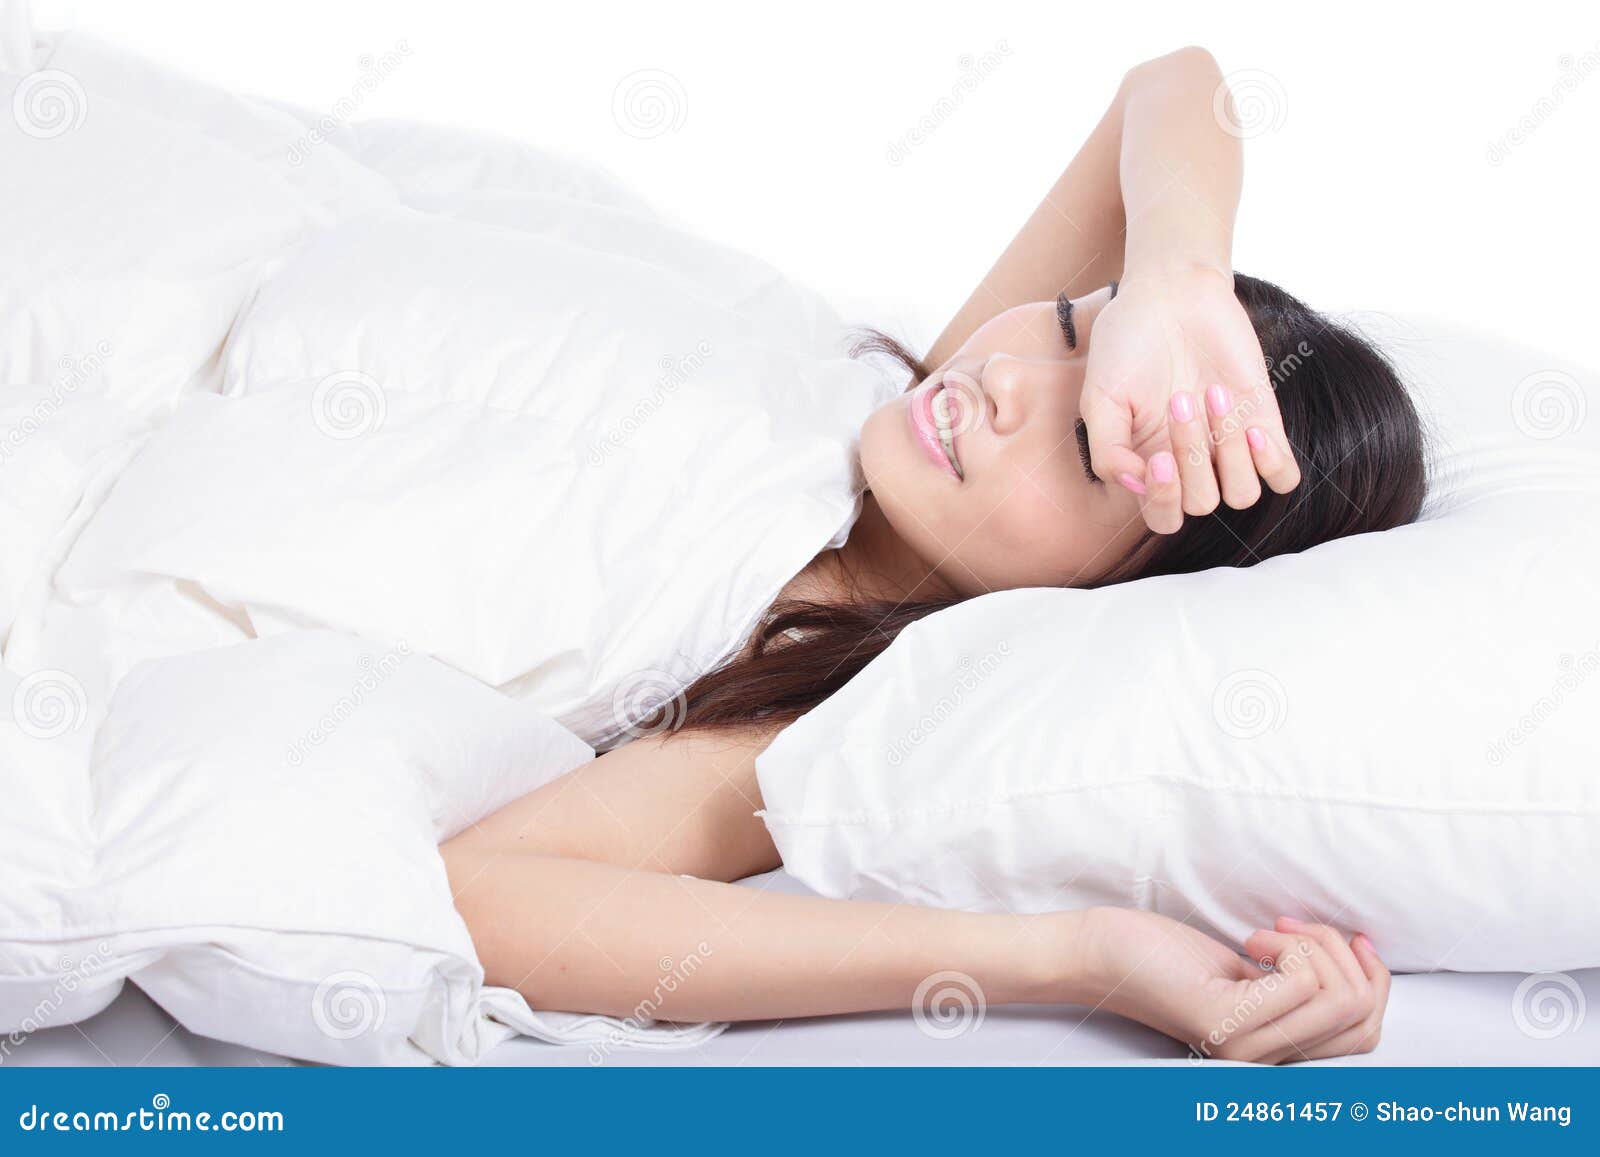 νεολαίες γυναικών ύπνου σπορείων. ασιατικές νεολαίες γυναικών ύπνου βασικού πρότυπες πρωινού κοριτσιών σπορείων